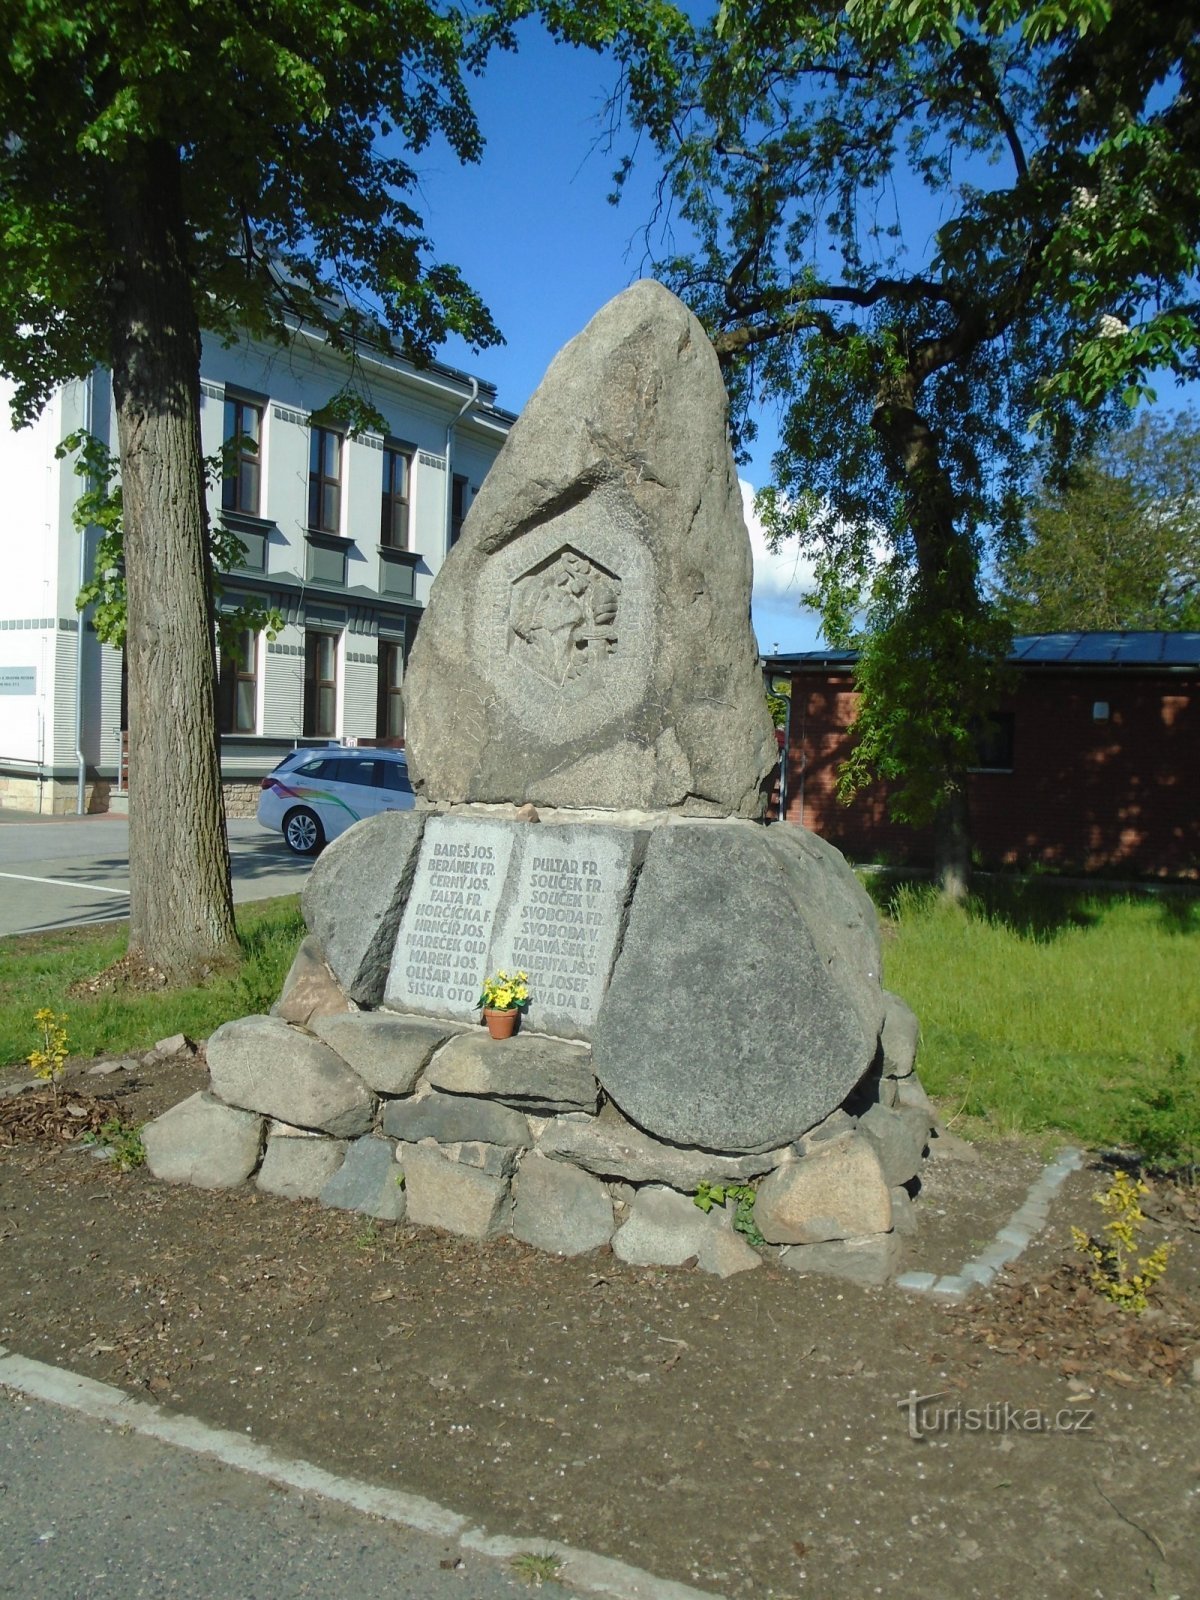 Đài tưởng niệm những người đã chết trong Chiến tranh thế giới thứ nhất ở Věkošy (Hradec Králové)